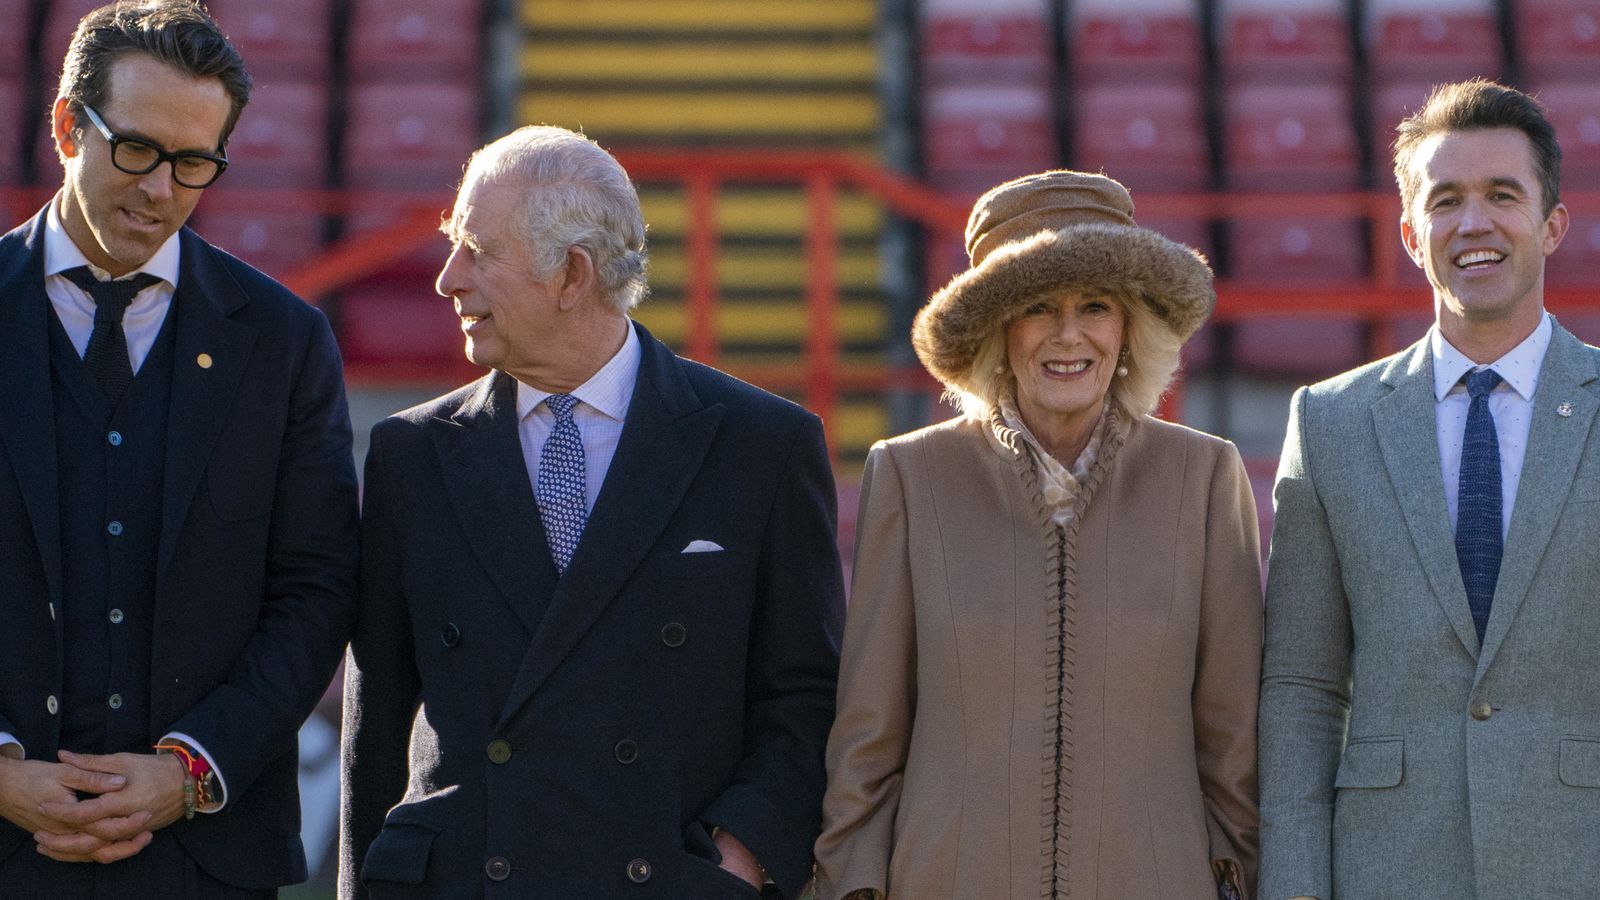 Король Чарльз и королева-консорт встречаются с голливудскими королевскими особами во время экскурсии по стадиону Рексхэм |  Новости Великобритании